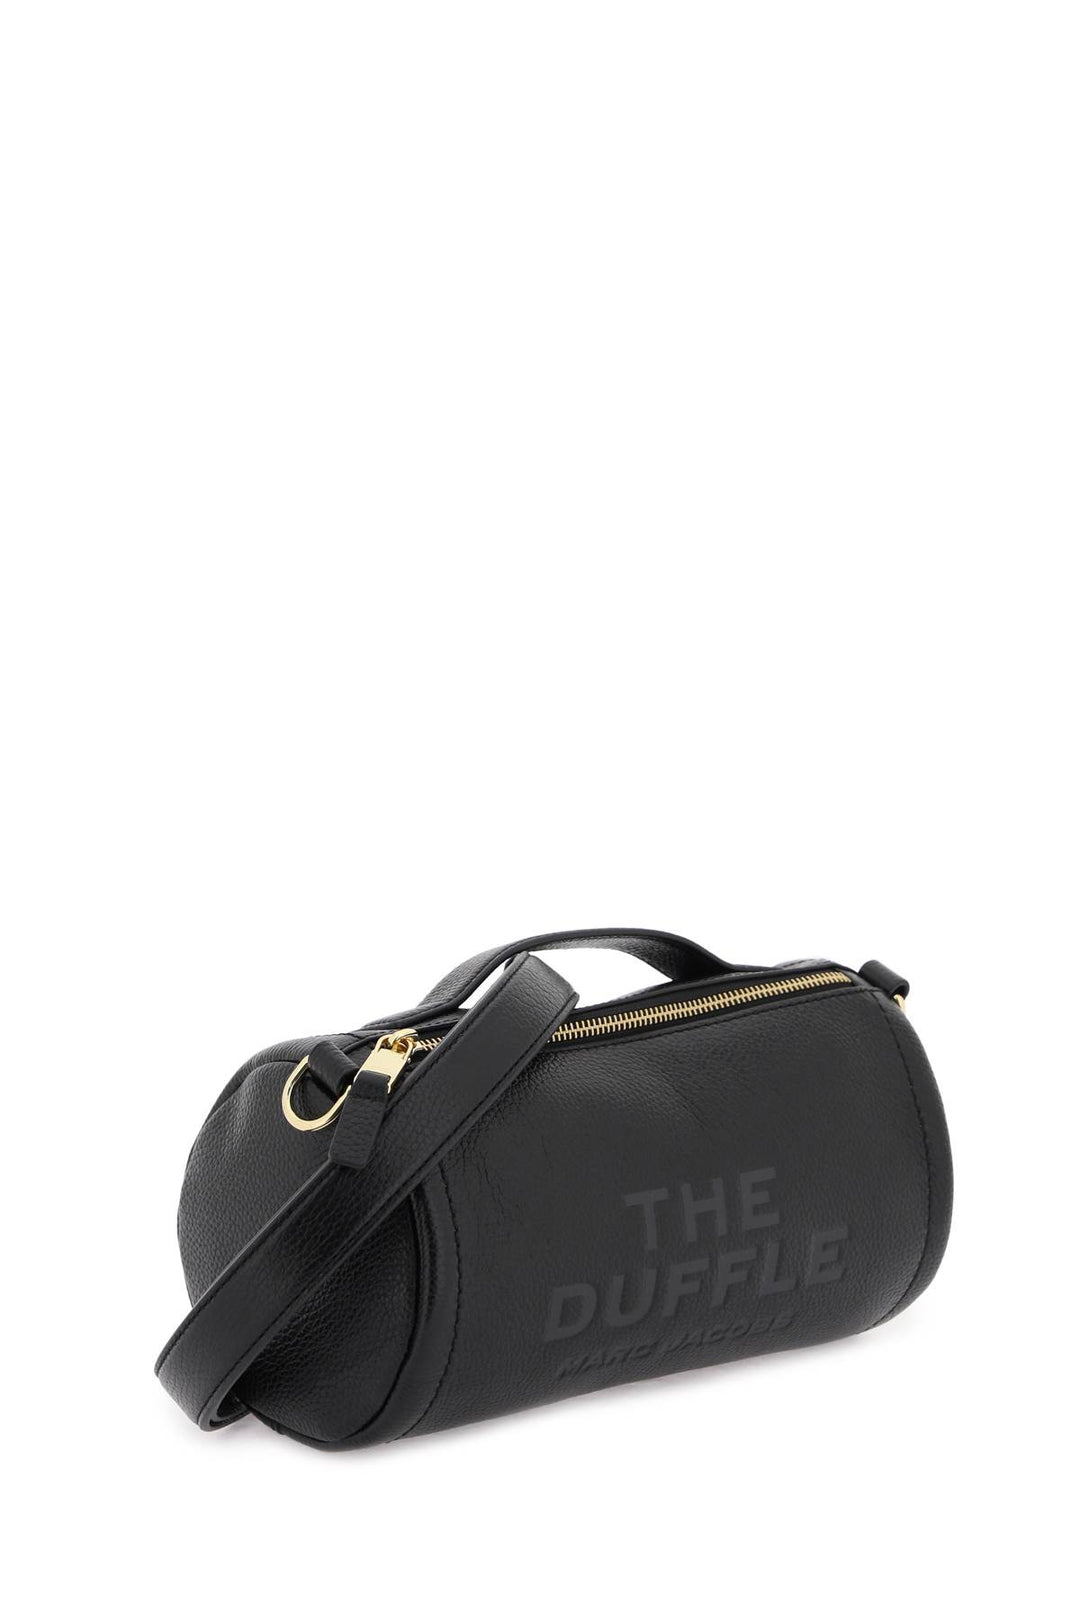 Borsa The Leather Duffle Bag